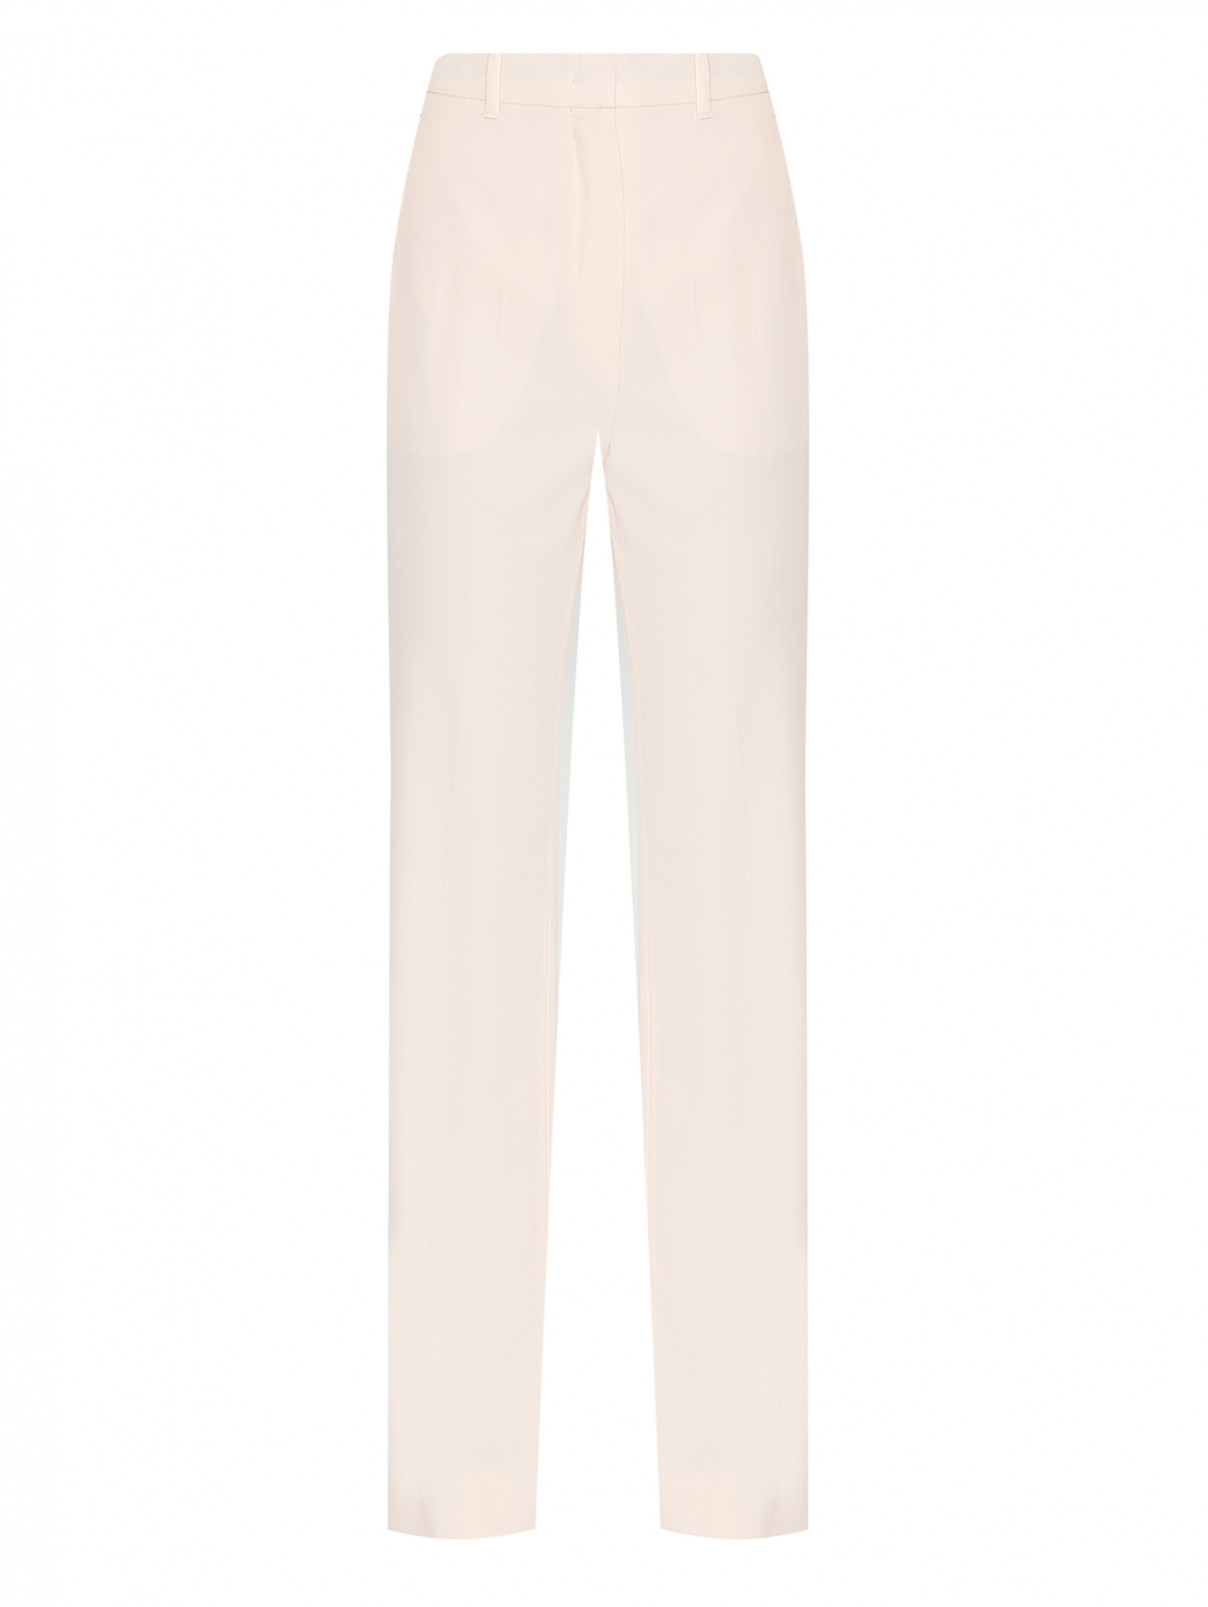 Однотонные прямые брюки из шерсти Max Mara  –  Общий вид  – Цвет:  Розовый